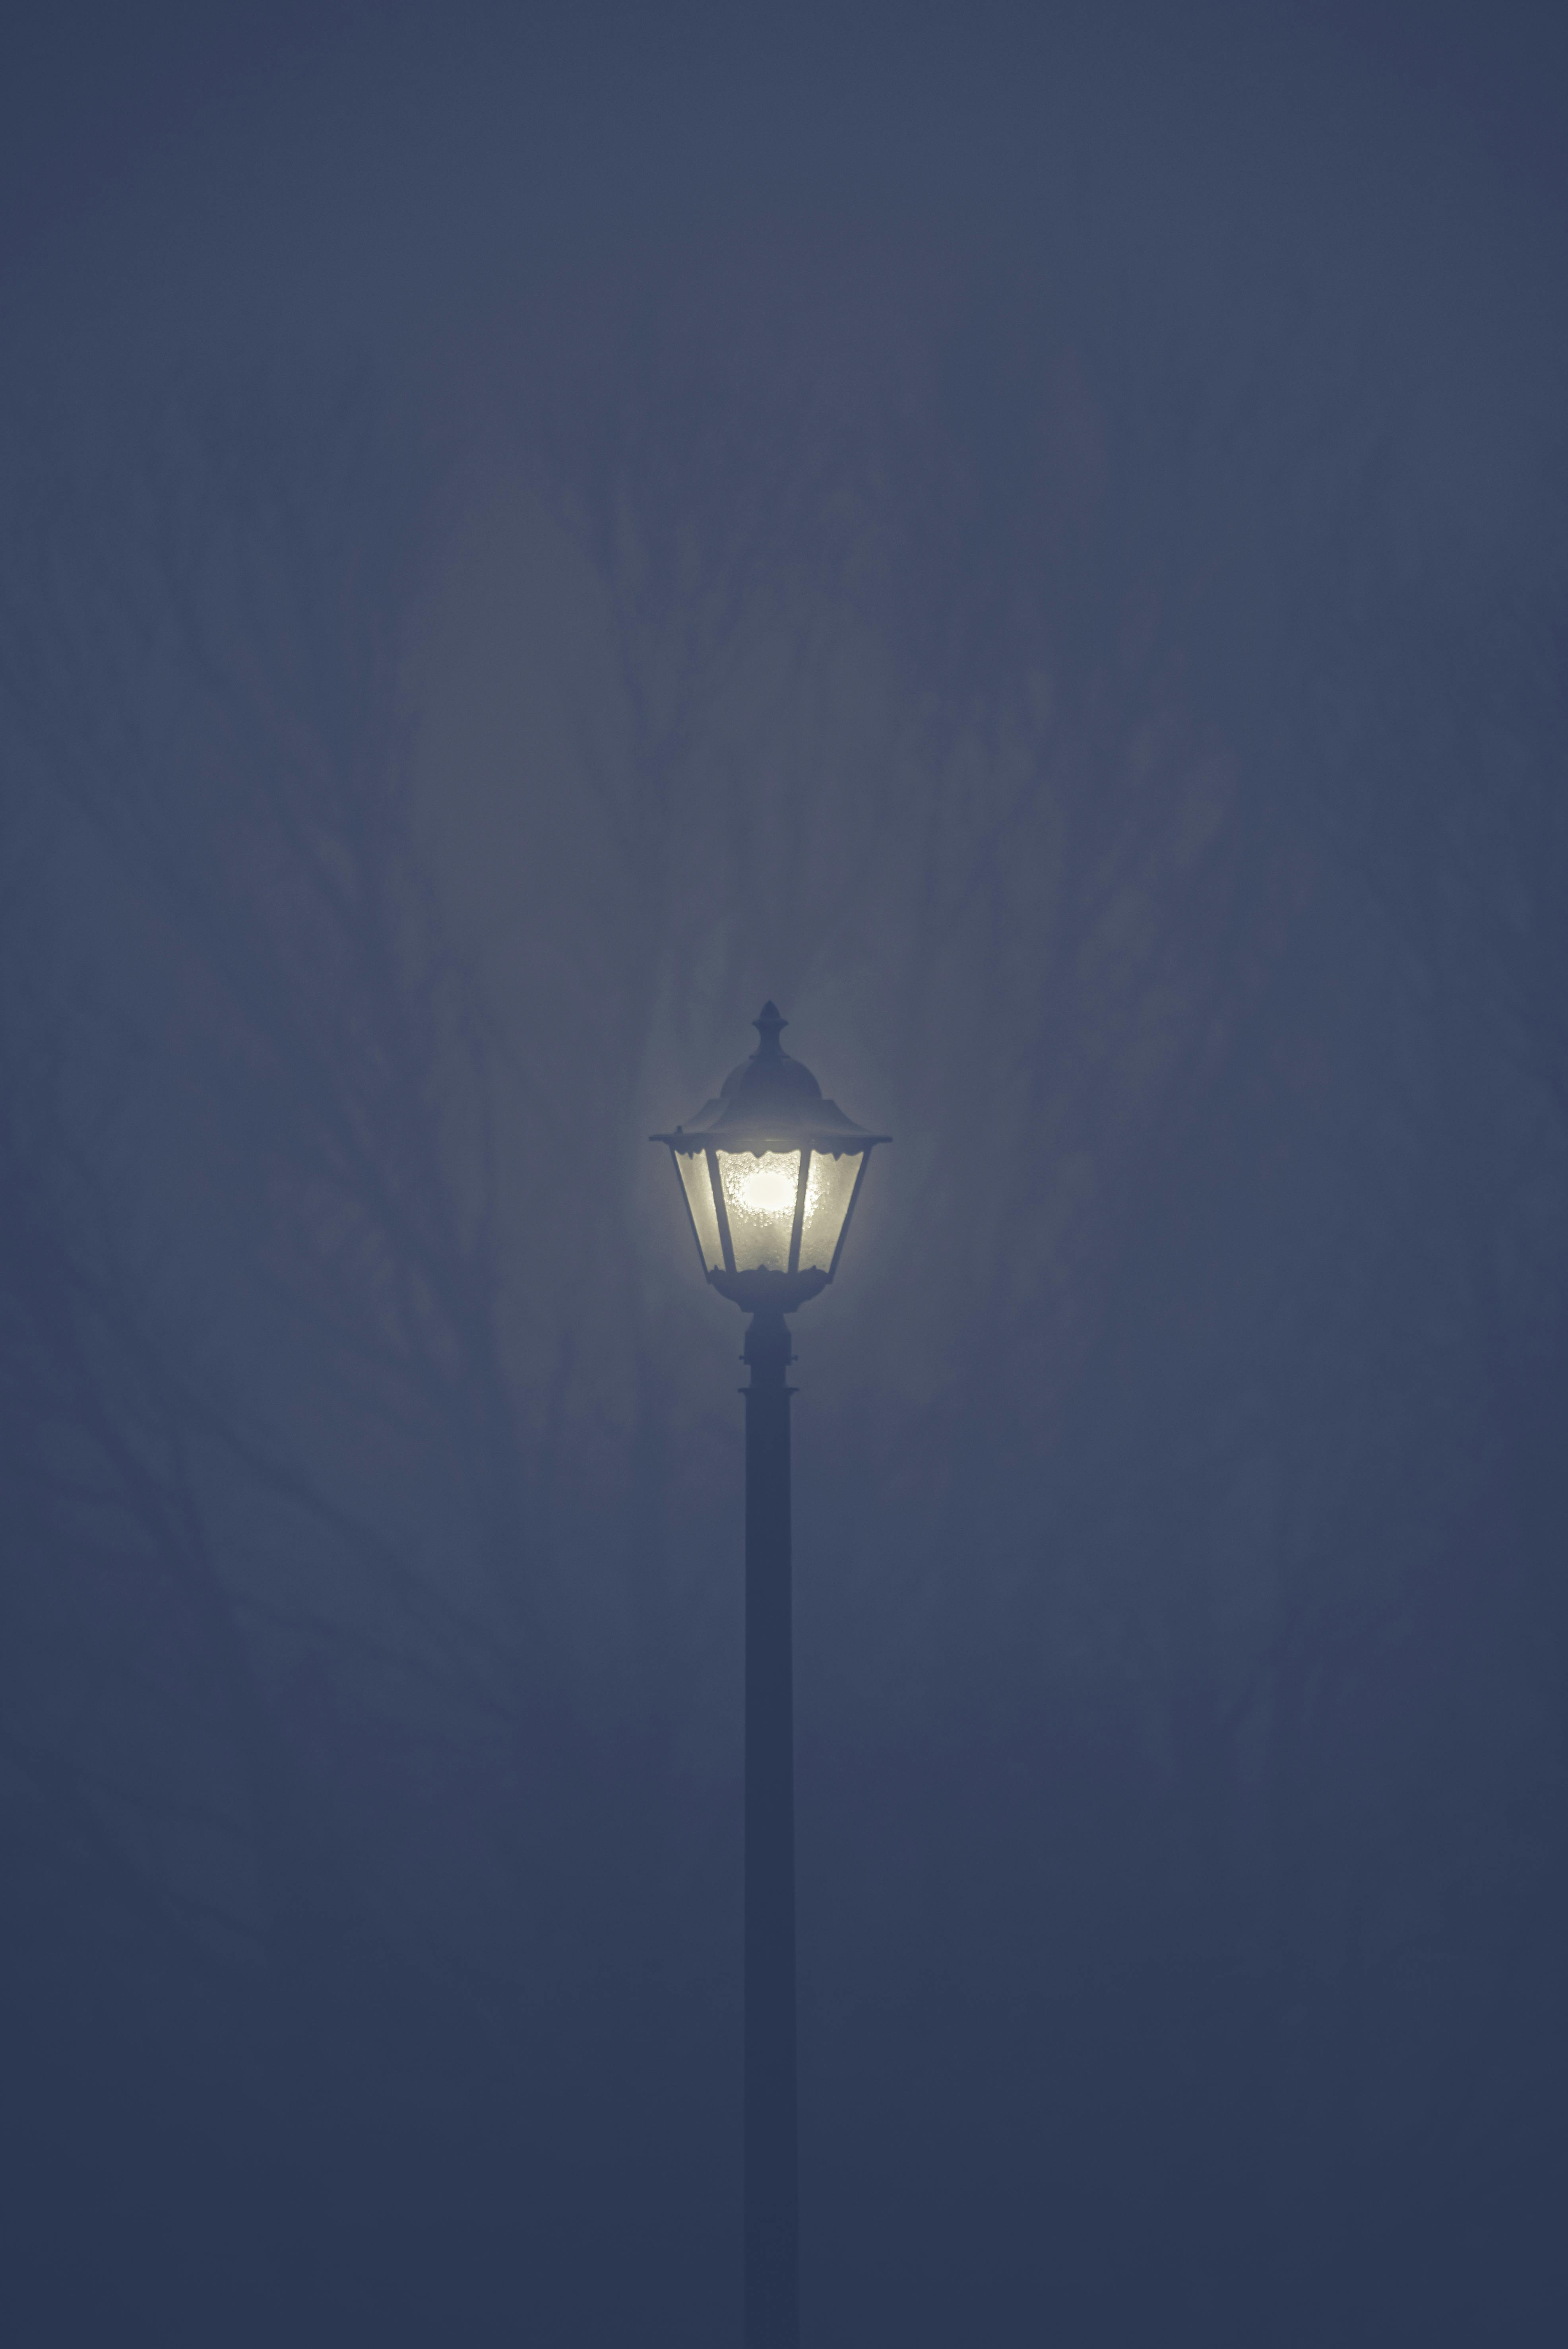 Humo ansiedad Desventaja Lighted Street Lamp Post during Night Time · Free Stock Photo